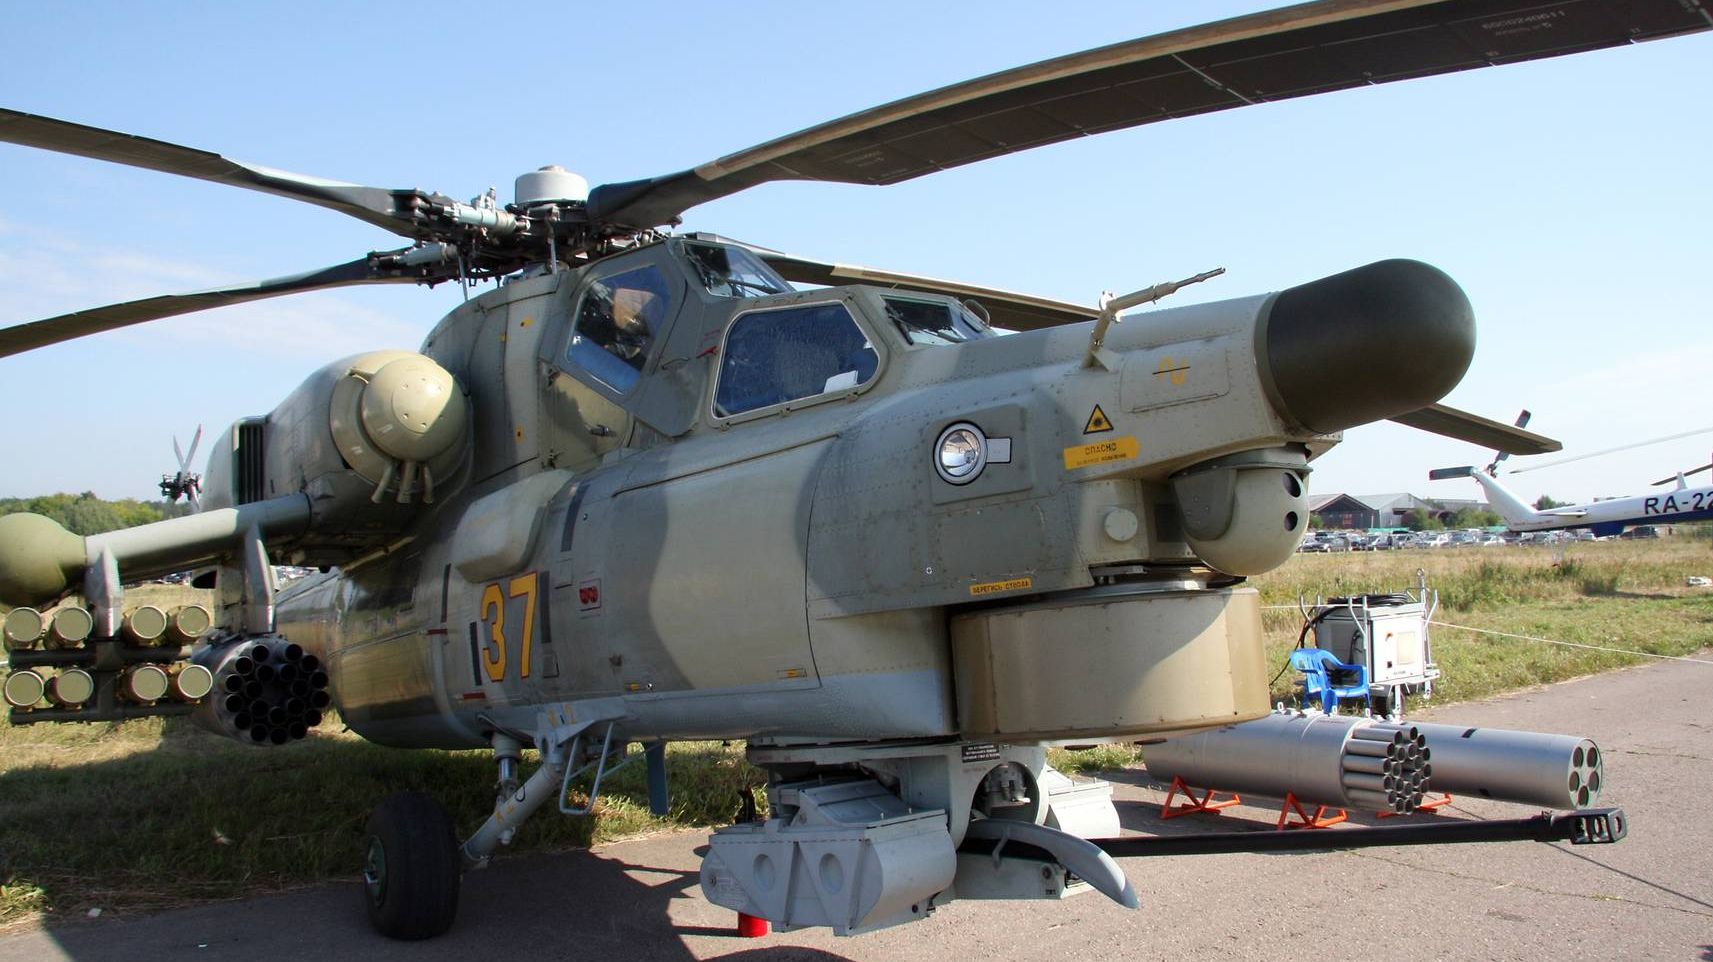 Вертолет Ми-28Н